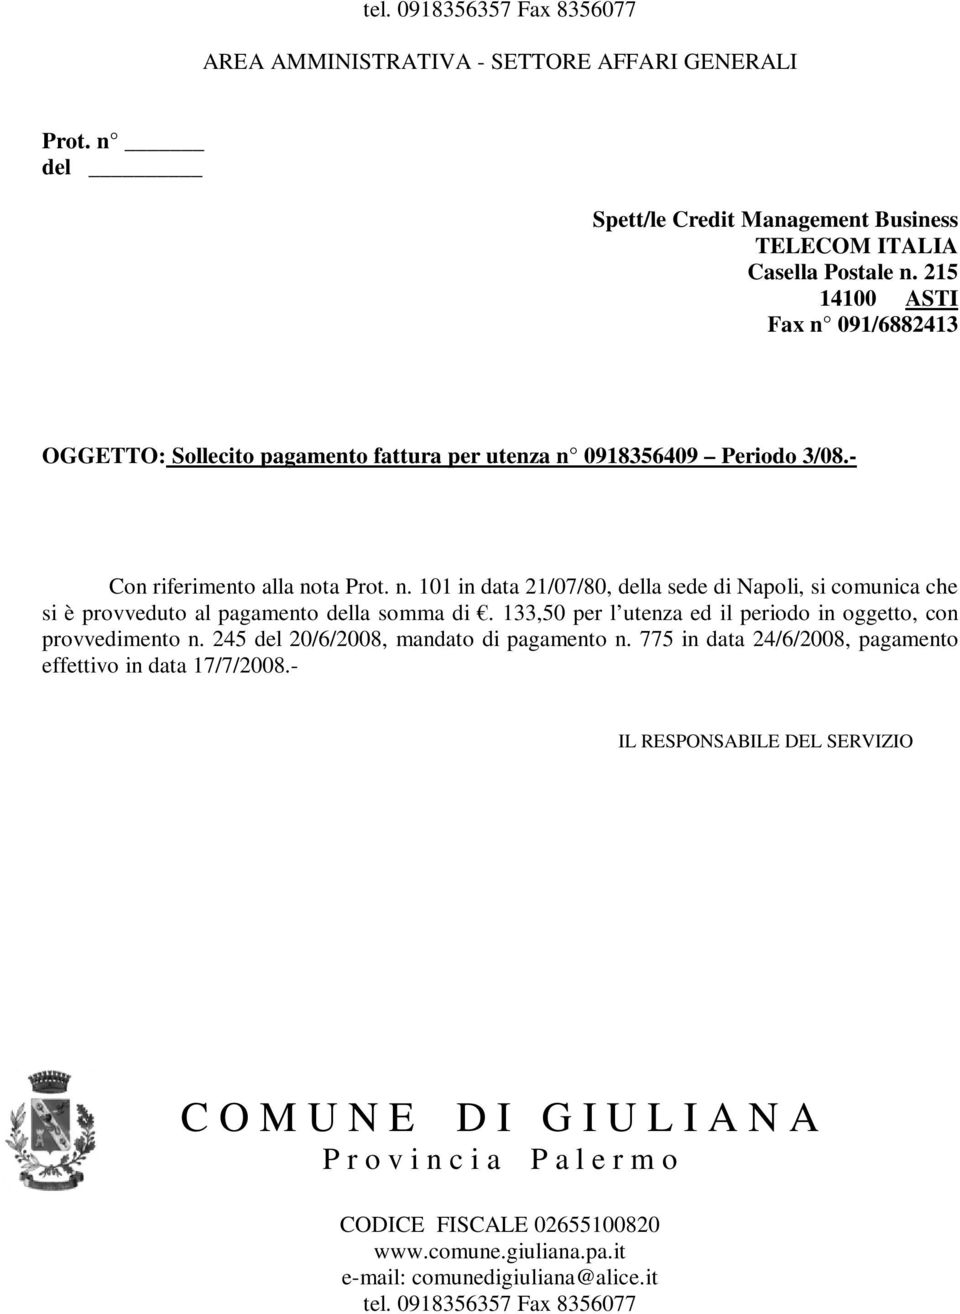 n. 101 in data 21/07/80, della sede di Napoli, si comunica che si è provveduto al pagamento della somma di.